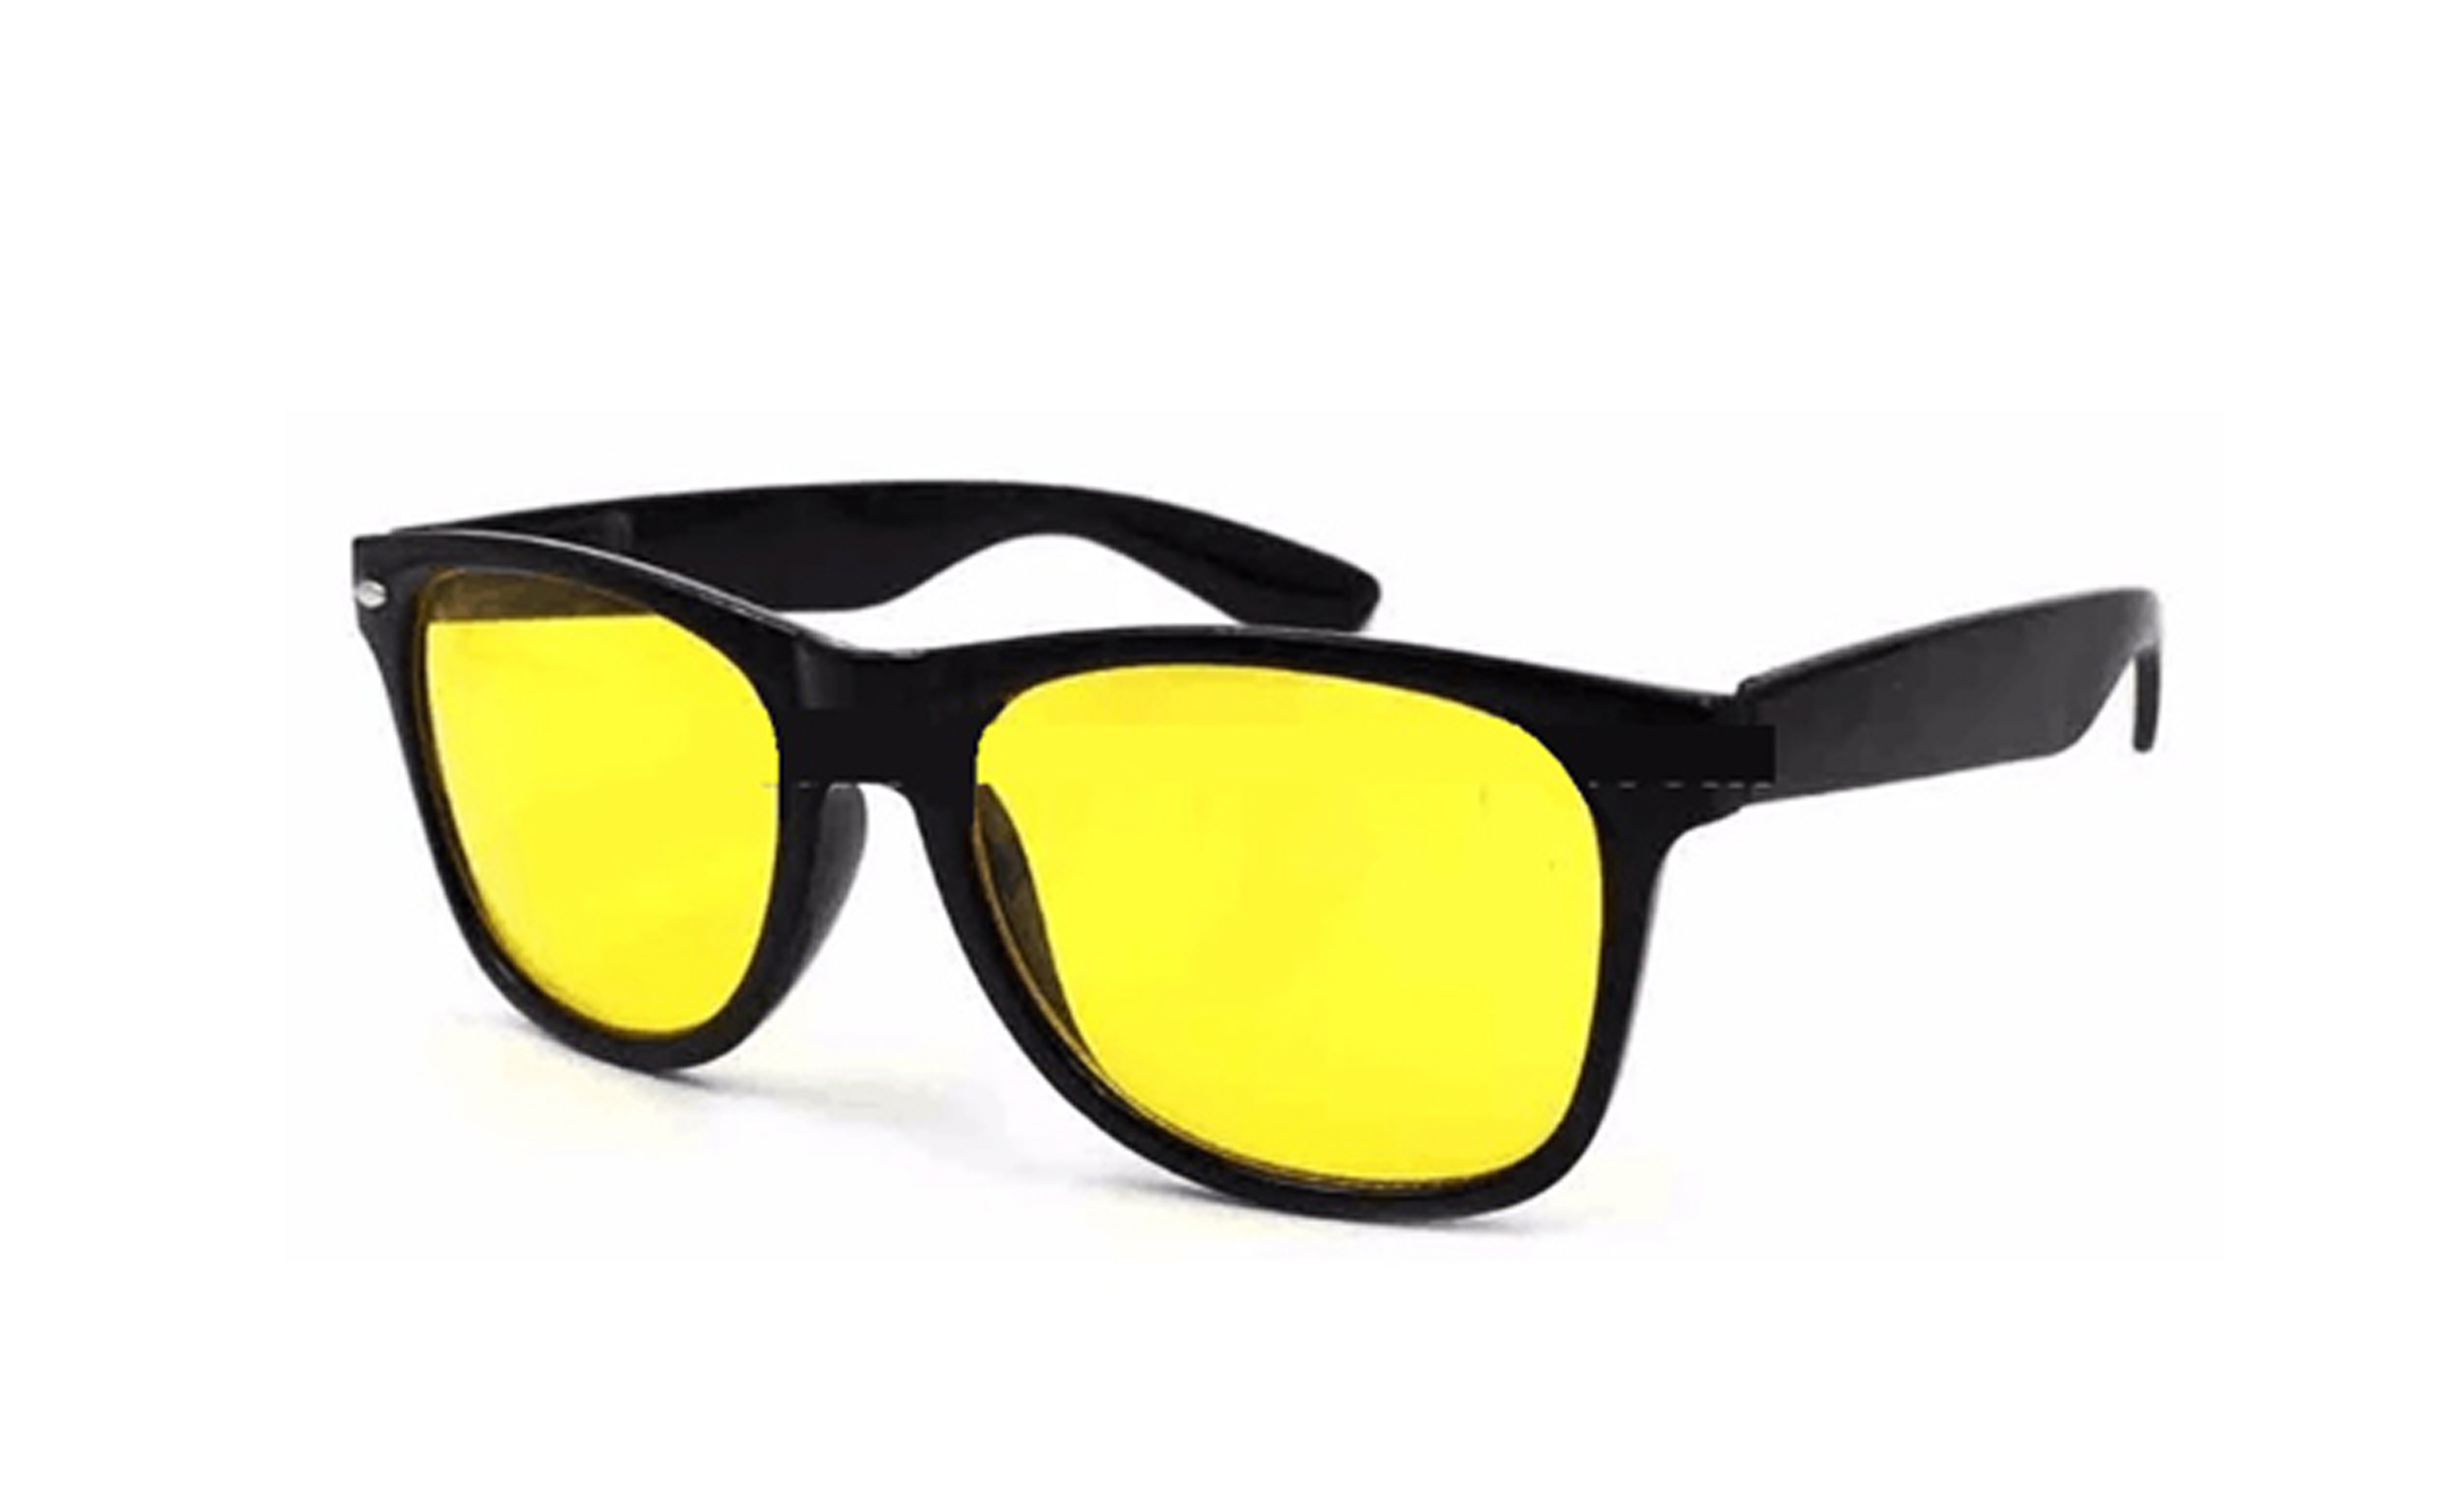 Fransande Auto KFZ Brille Sonnenbrille Nachtfahrbrille Nachtsichtbrille Kontrastbrille ideal gegen blendendes Licht bei Nachtfahrten 